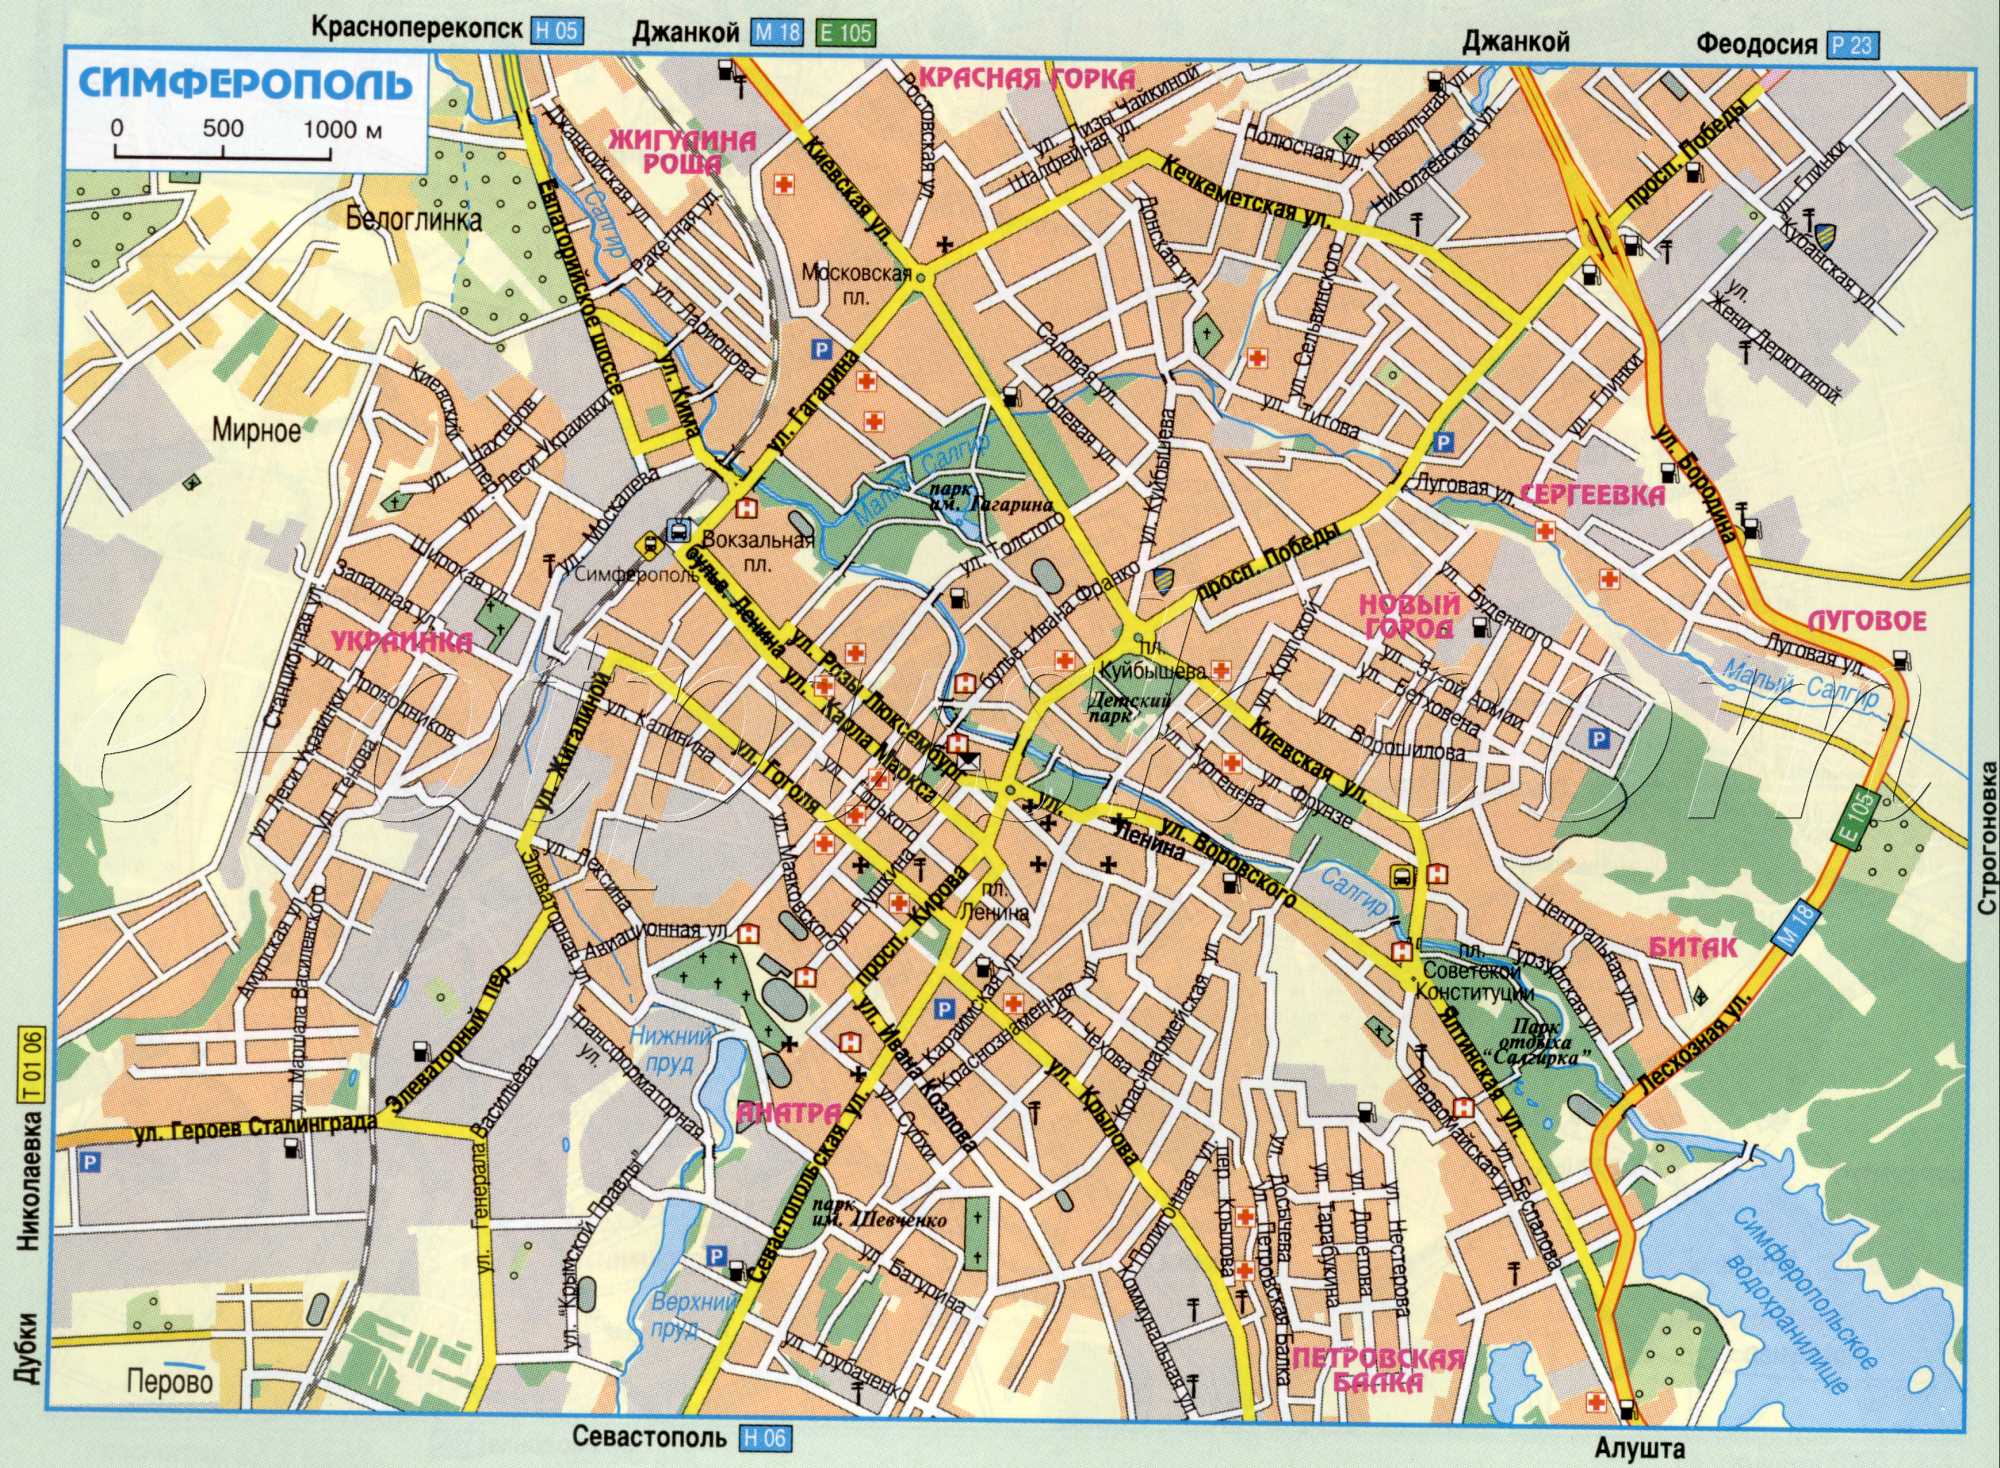 Map of Simferopol (Ukraine auto Dorgo city Simferopol Crimea). Detailed road map download for free